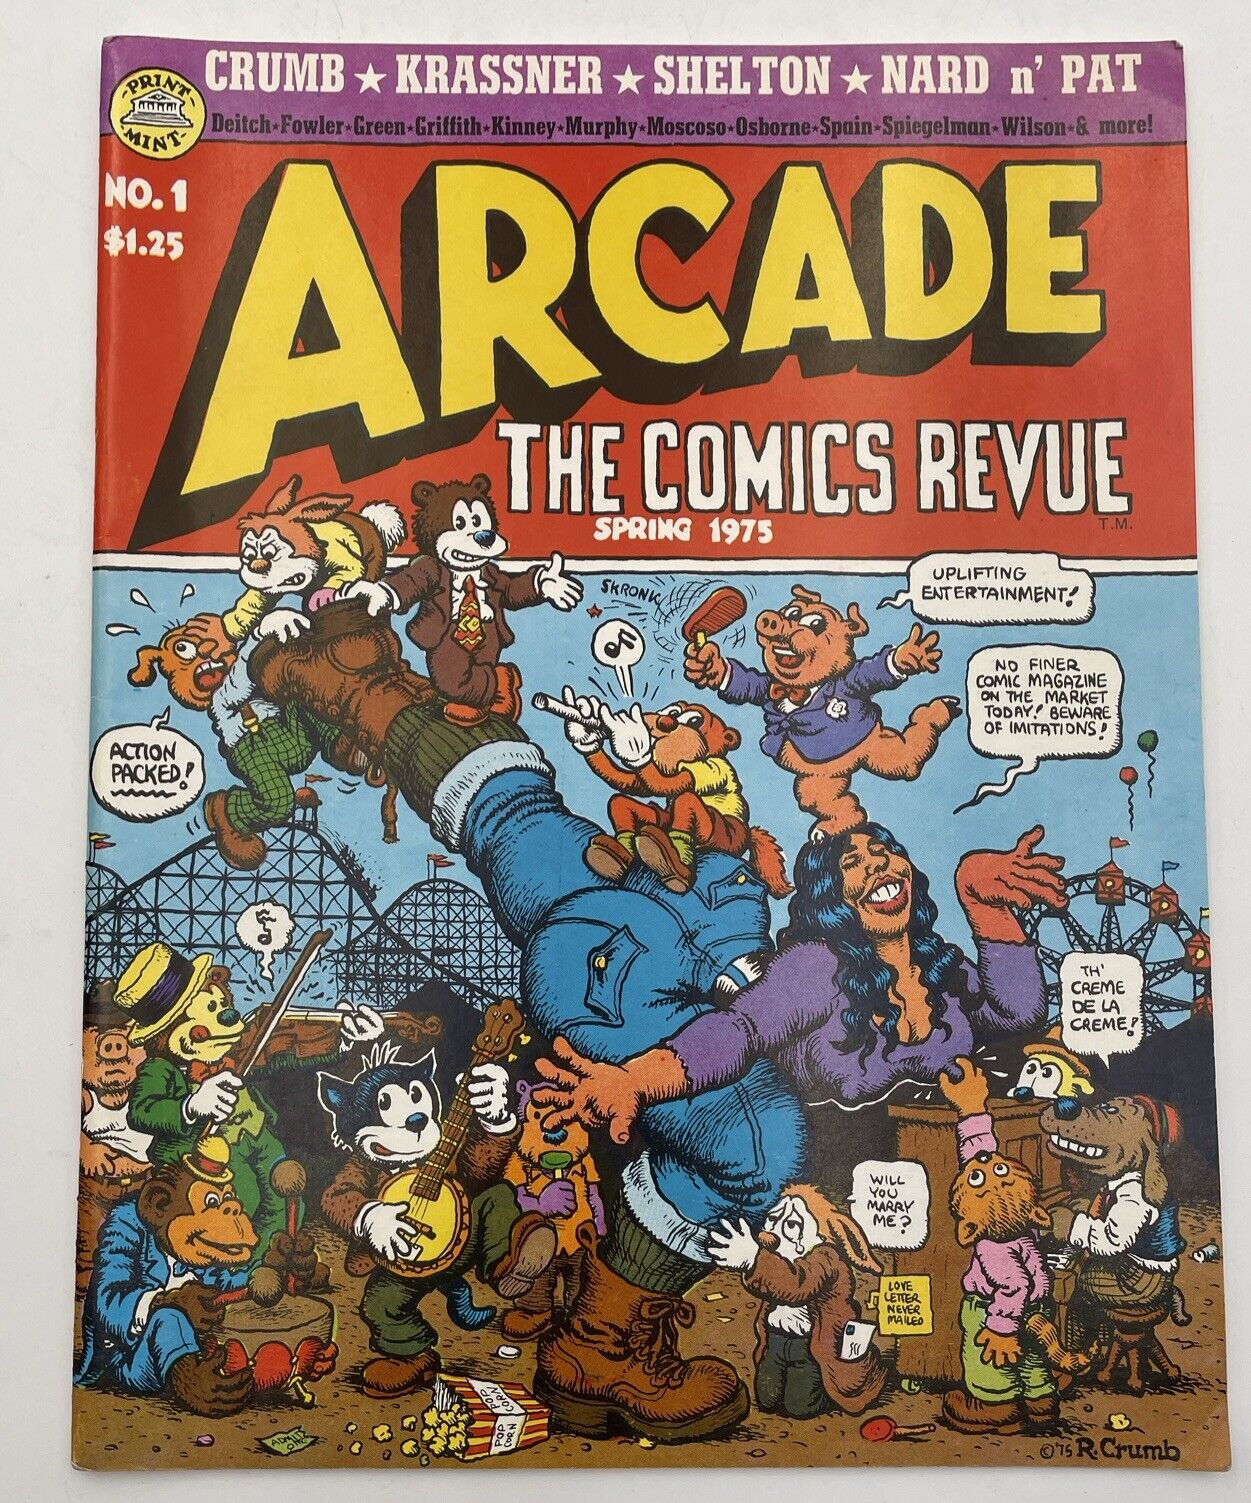 Vintage ARCADE The Comics Revue Vol. 1 No. 1 Spring 1975 Robert Crumb Book